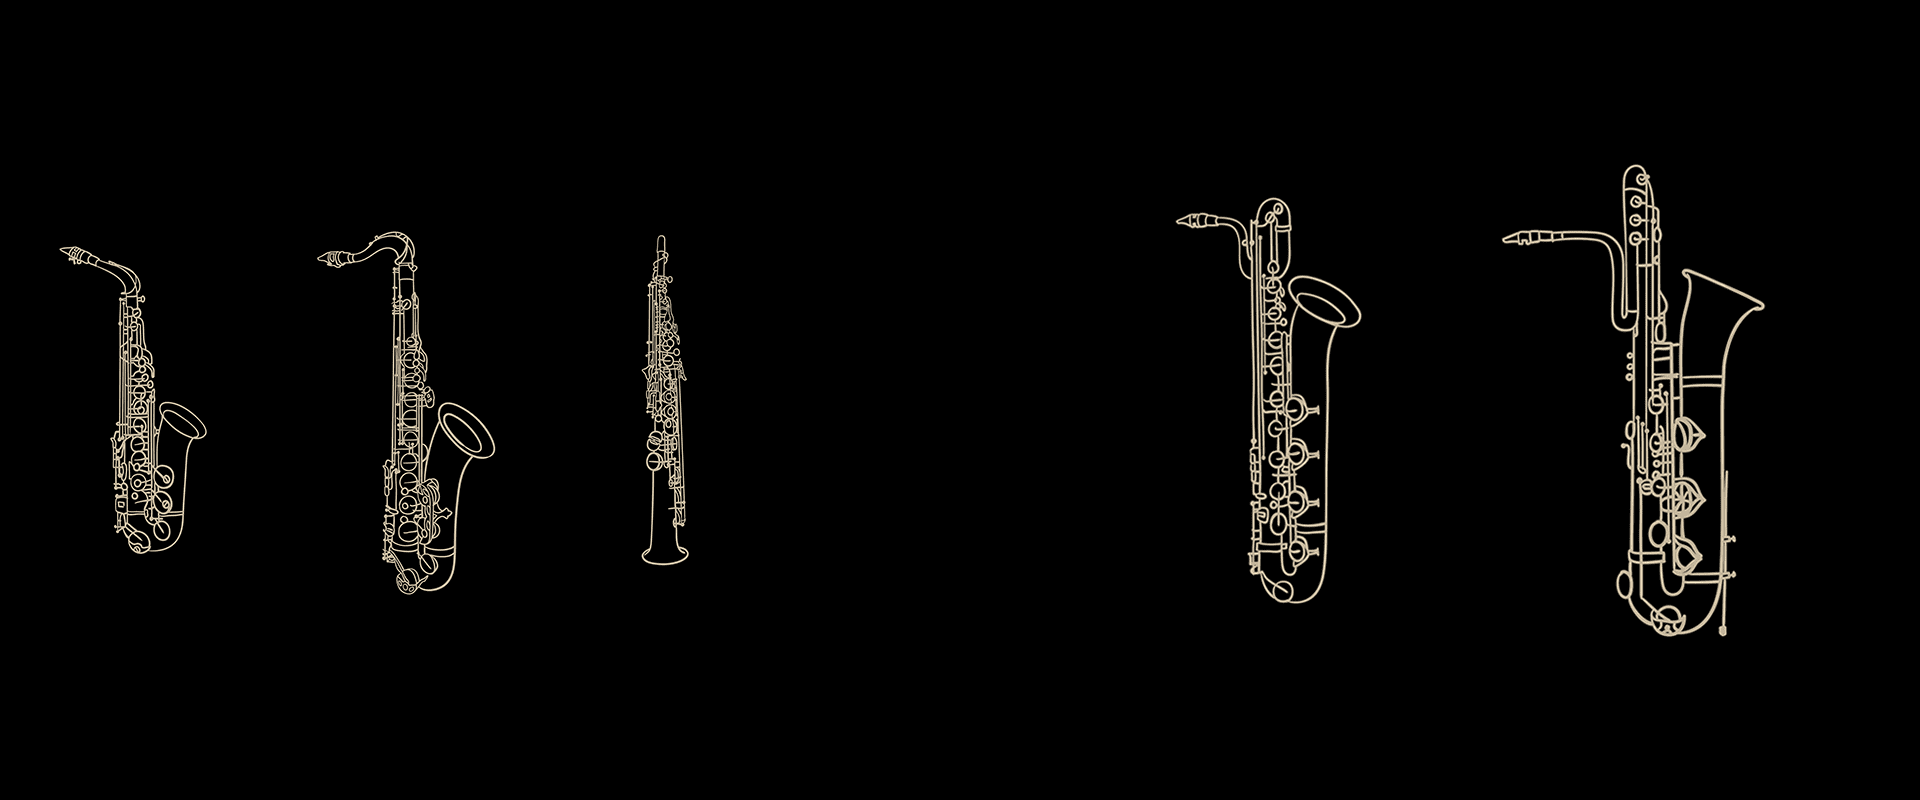 saxophonefamilia-4